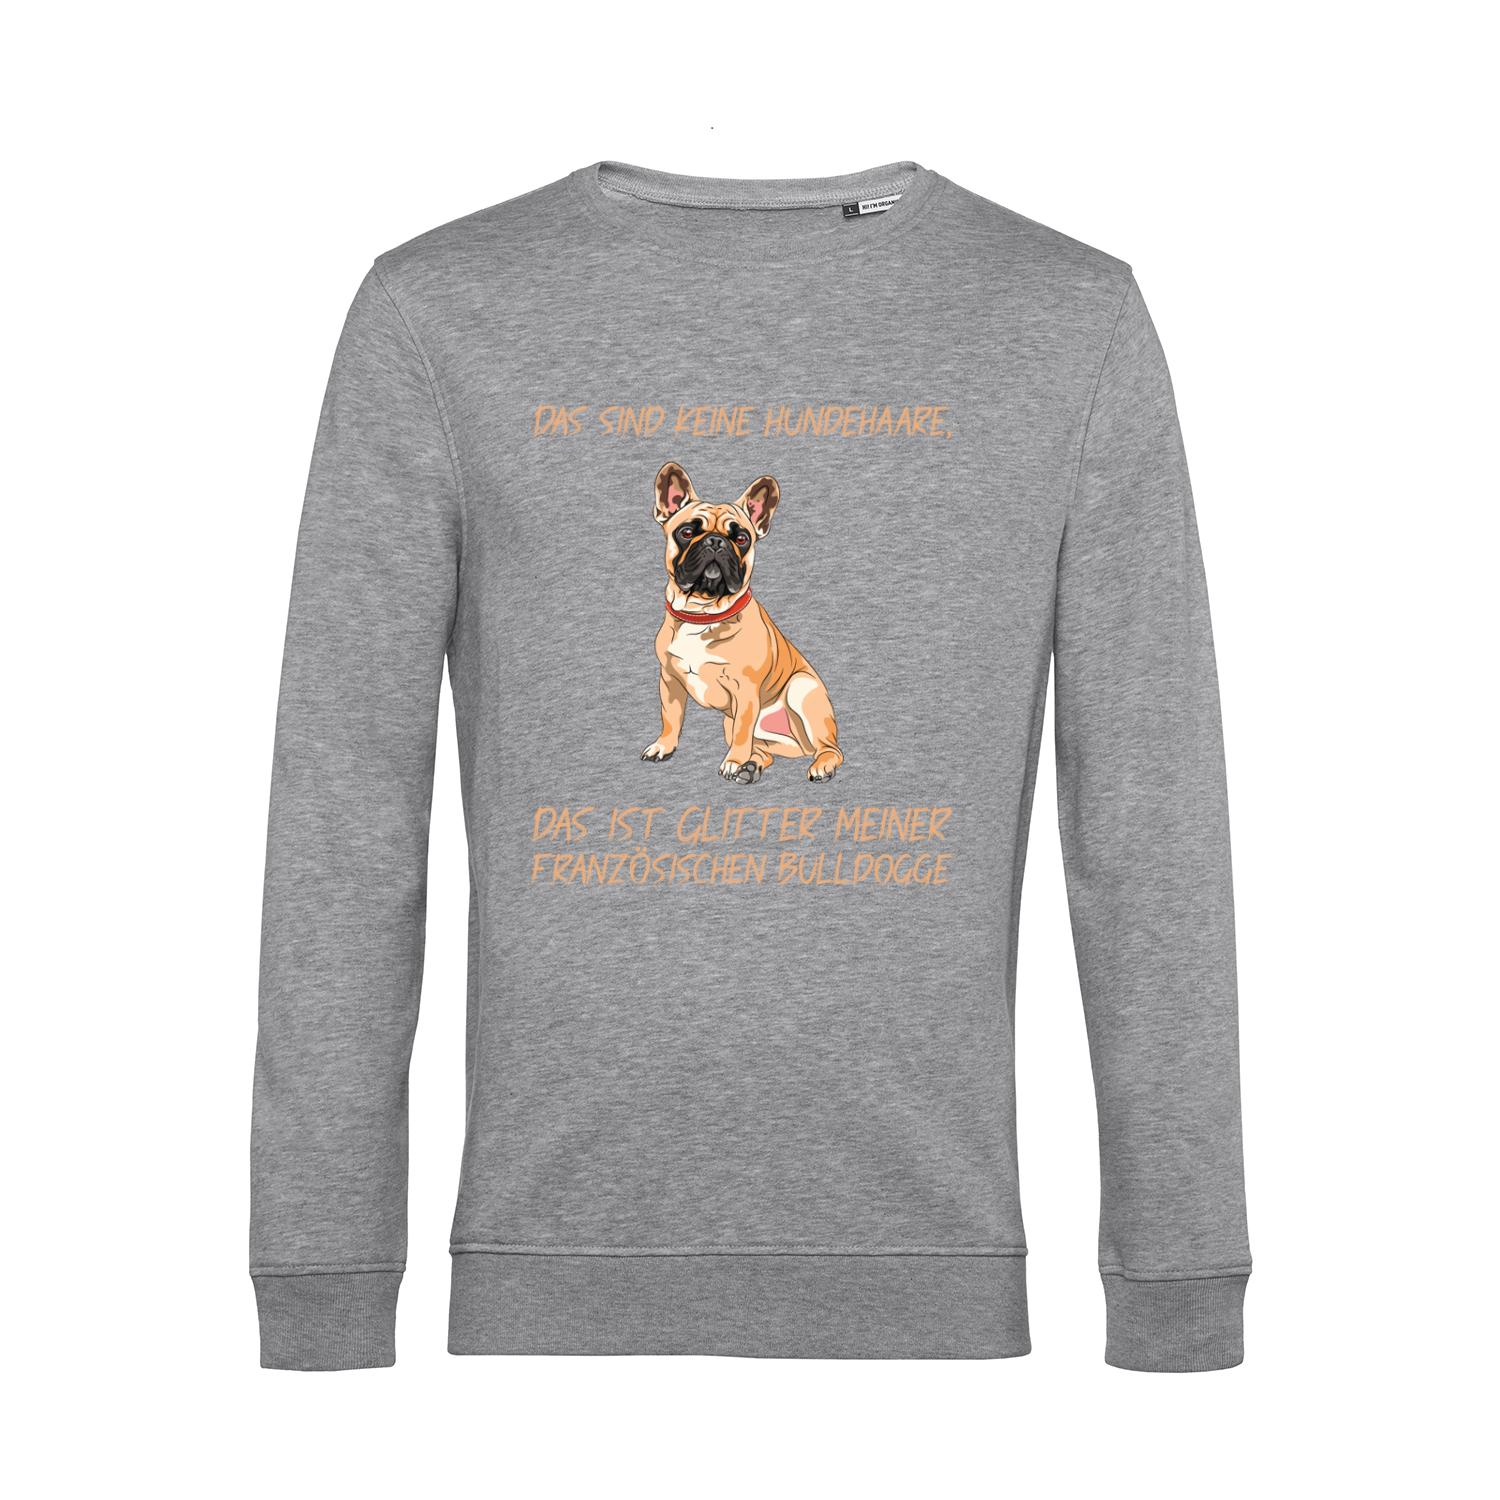 Nachhaltiges Sweatshirt Herren Hunde - Französische Bulldogge - keine Hundehaare - Glitter